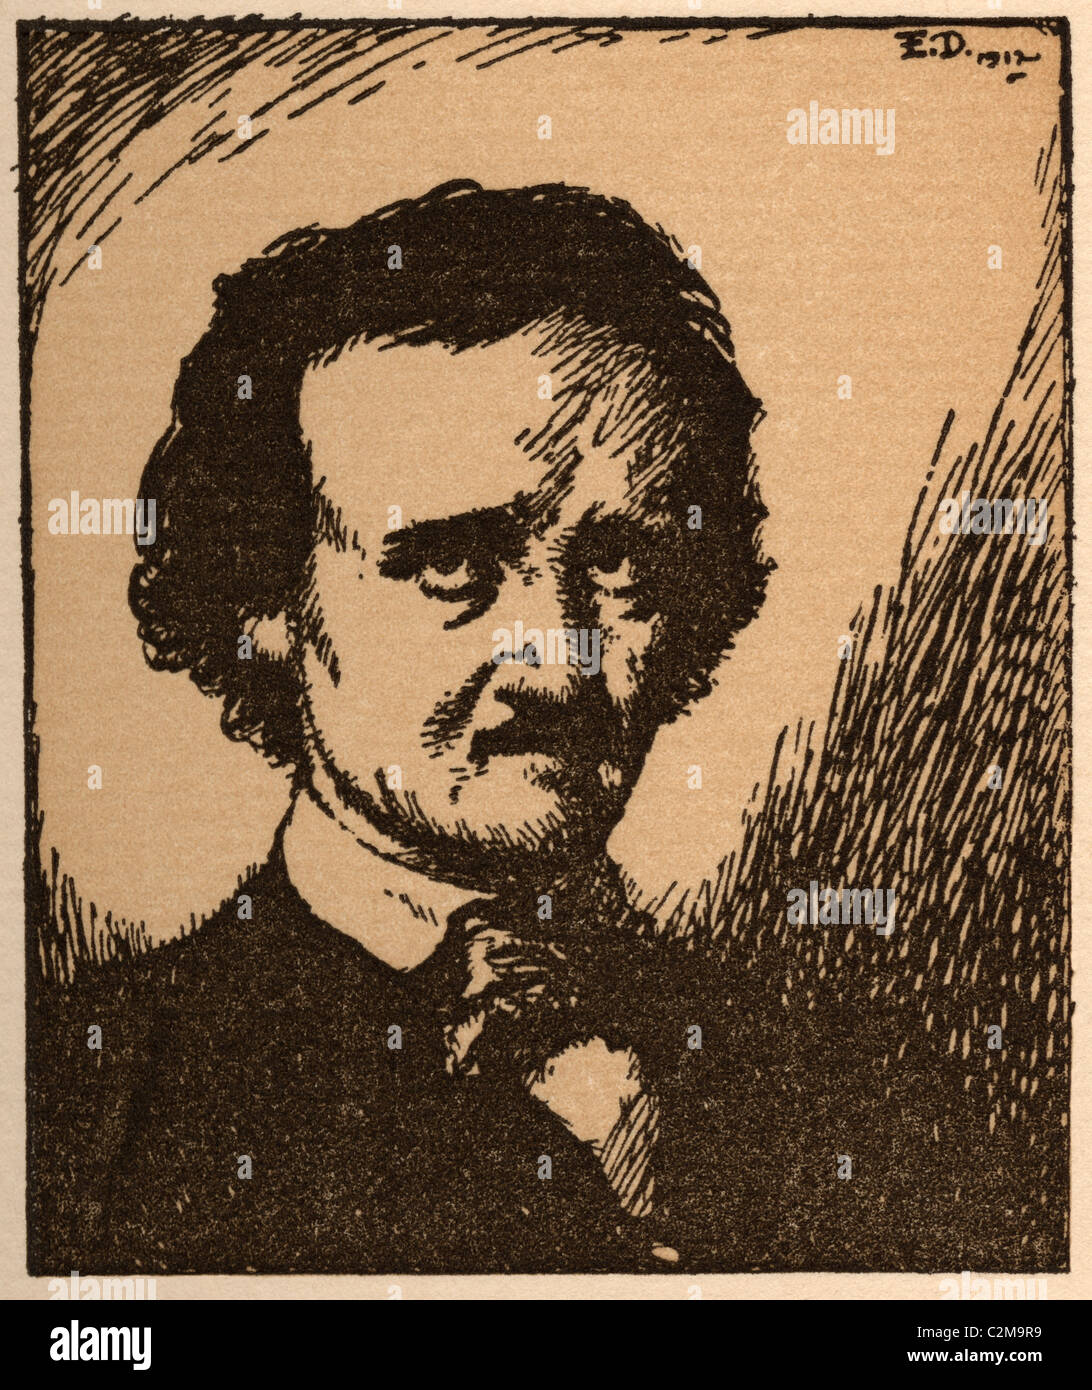 Porträt von Poe von Edmund Dulac illustriert Stockfoto